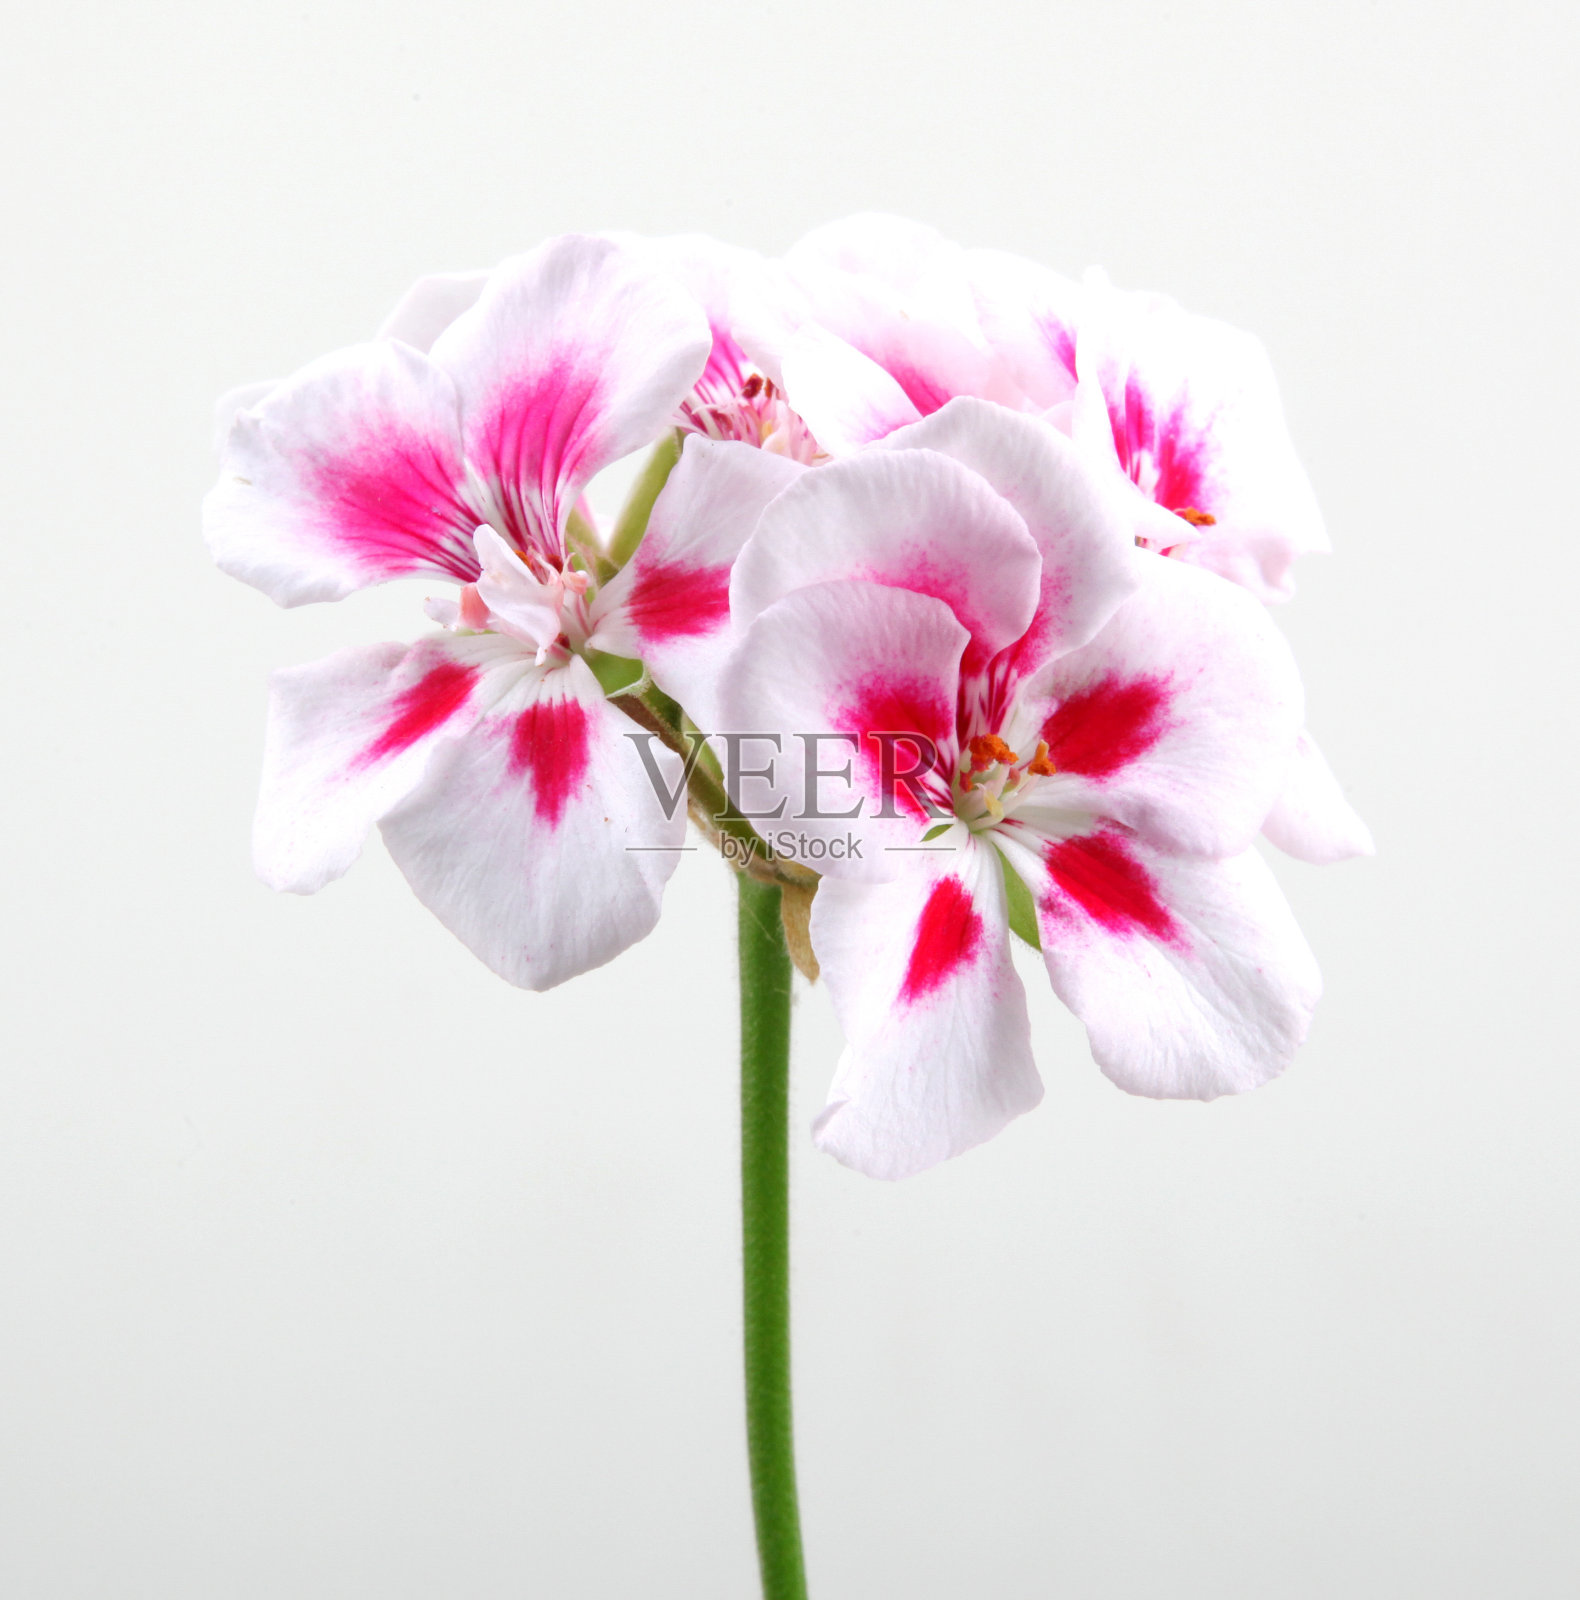 香叶天竺葵属植物的花照片摄影图片